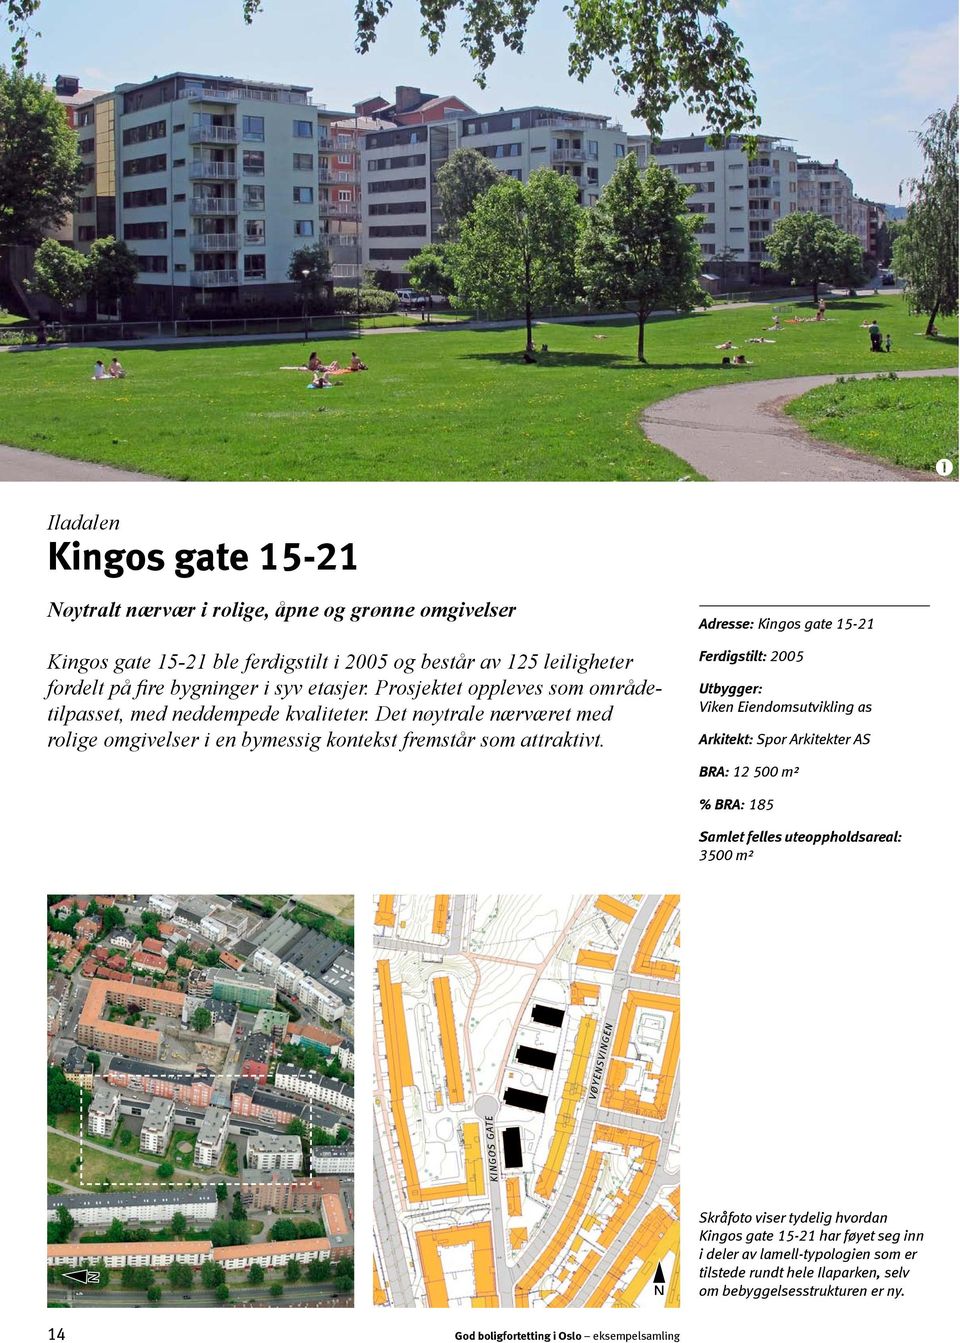 OMRÅDEKARAKTER Kingos gate 15-21 føyer seg ledig inn i den øvrige bebyggelsen i Iladalen som har en ordnet og funksjonalistisk karakter med mange effektive boligkvartaler.